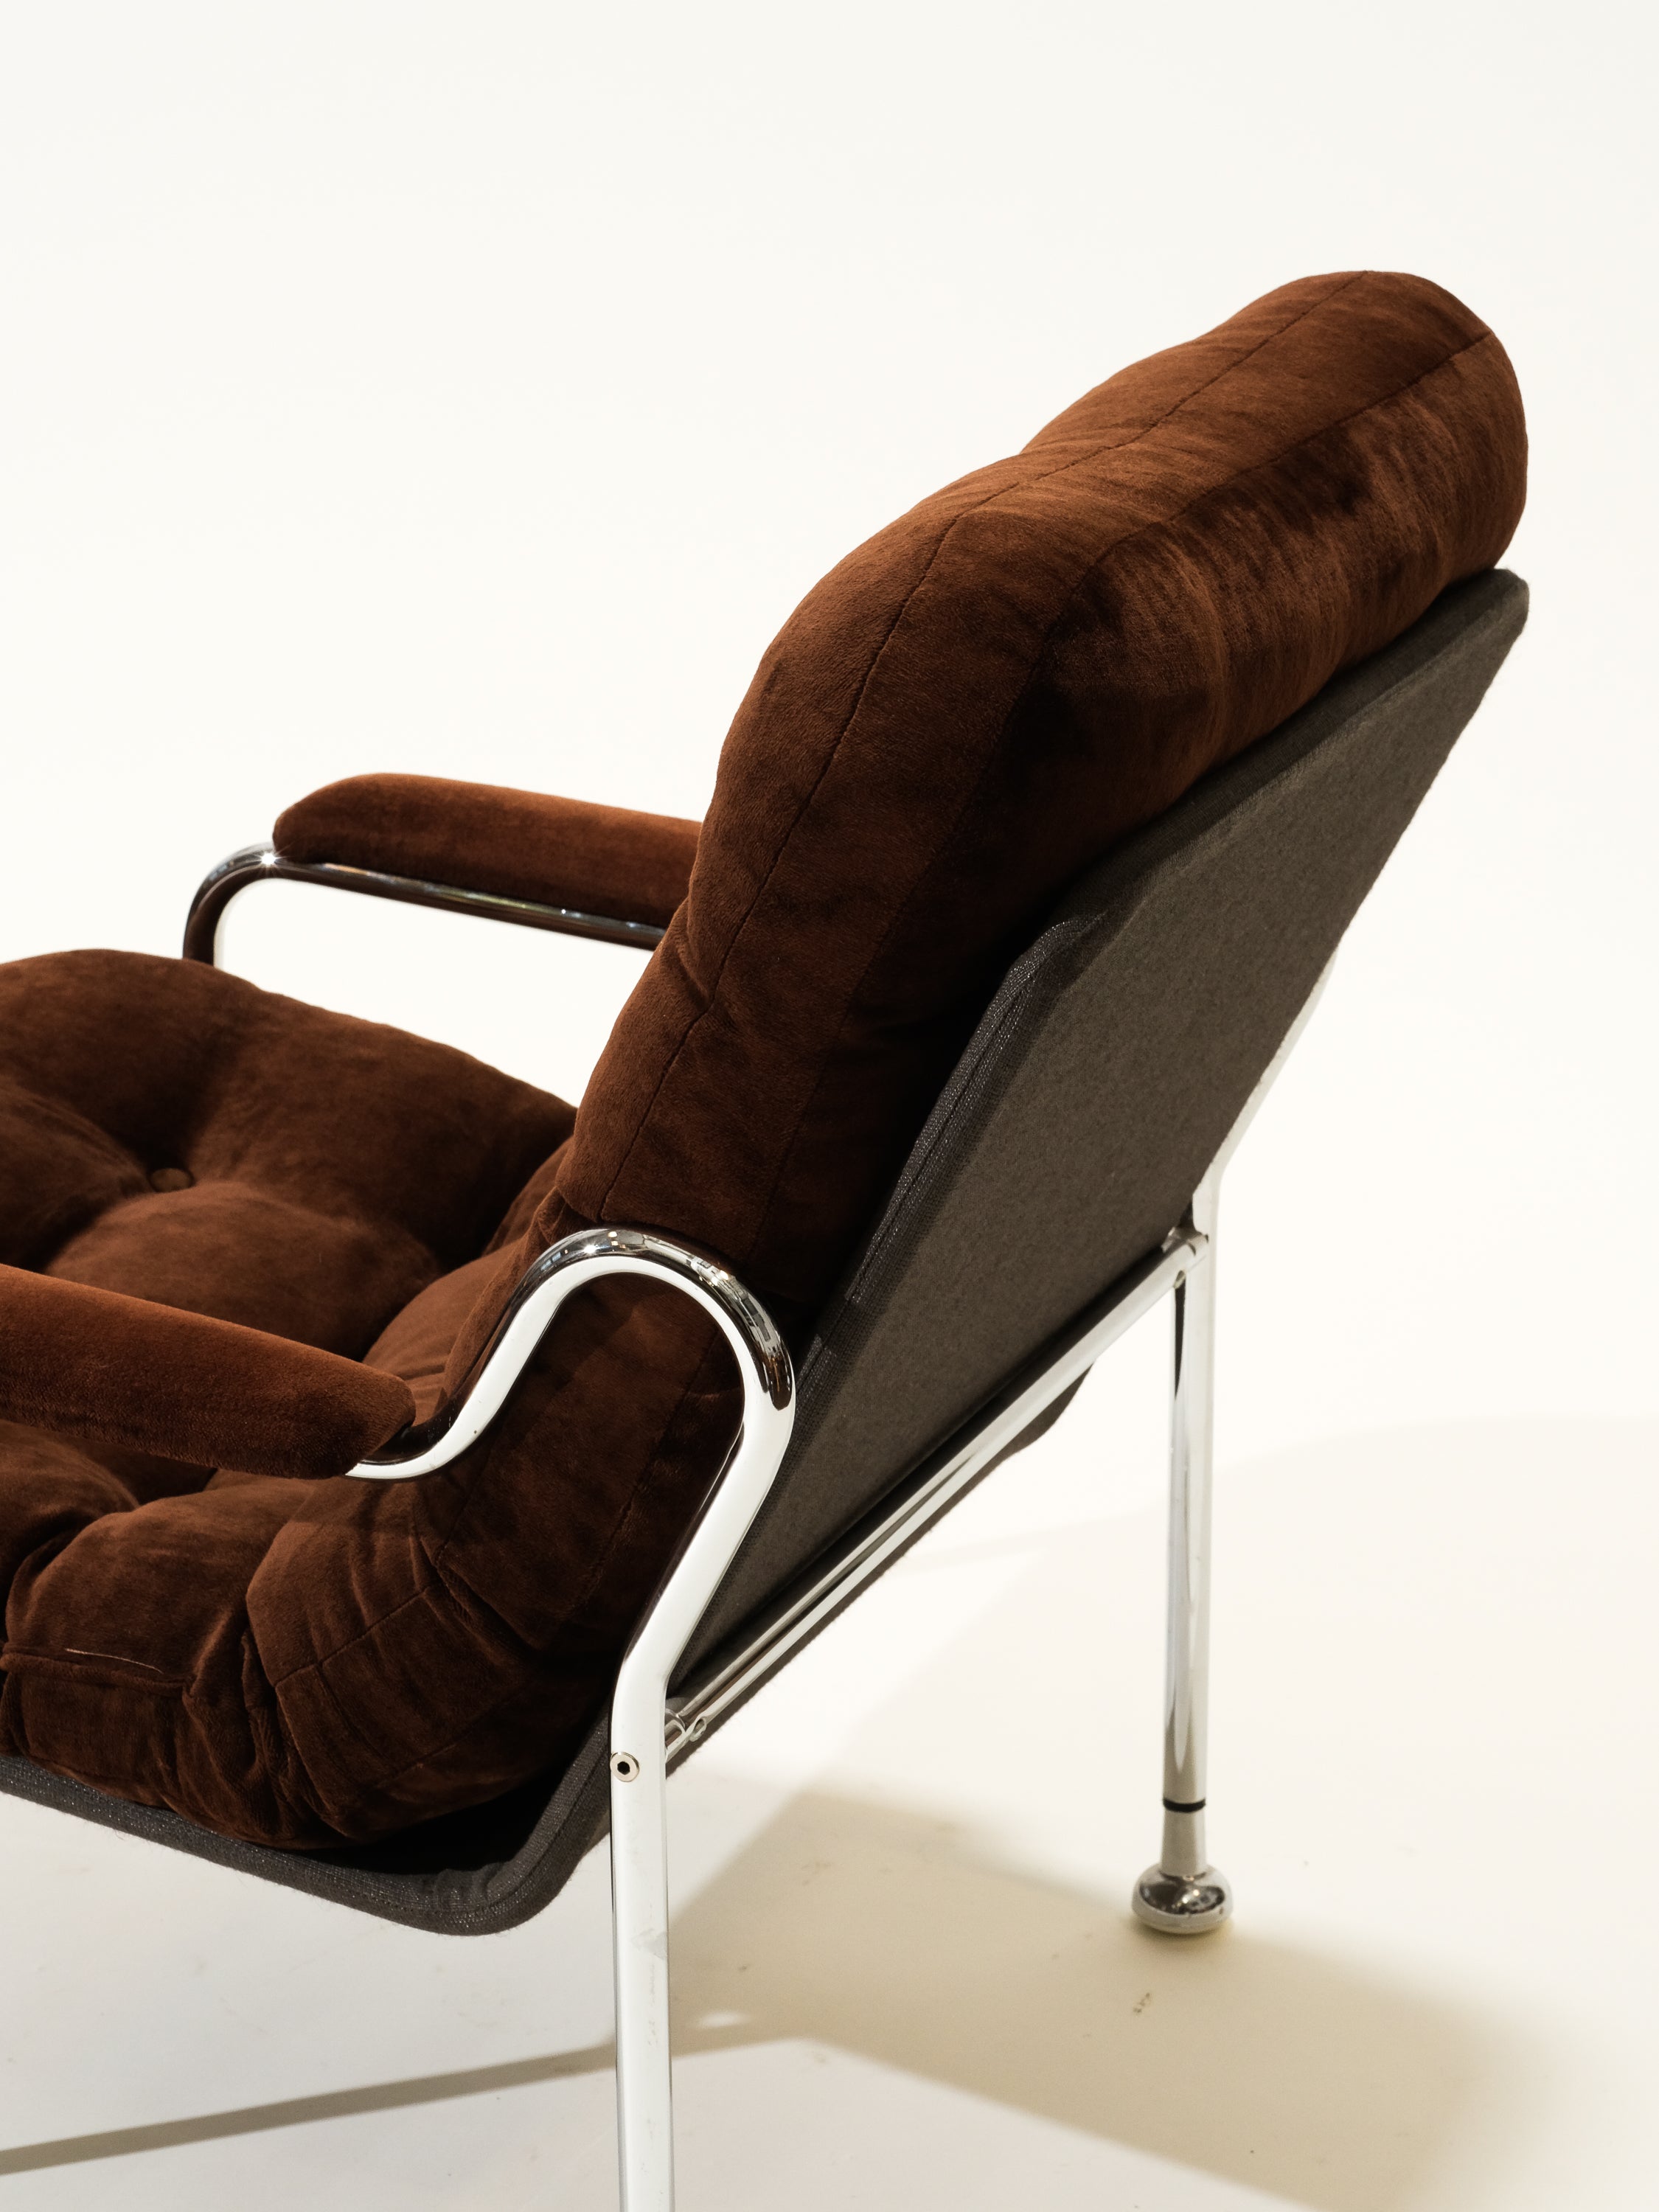 Tubular Chrome Steel Lounge Chair, 1970s